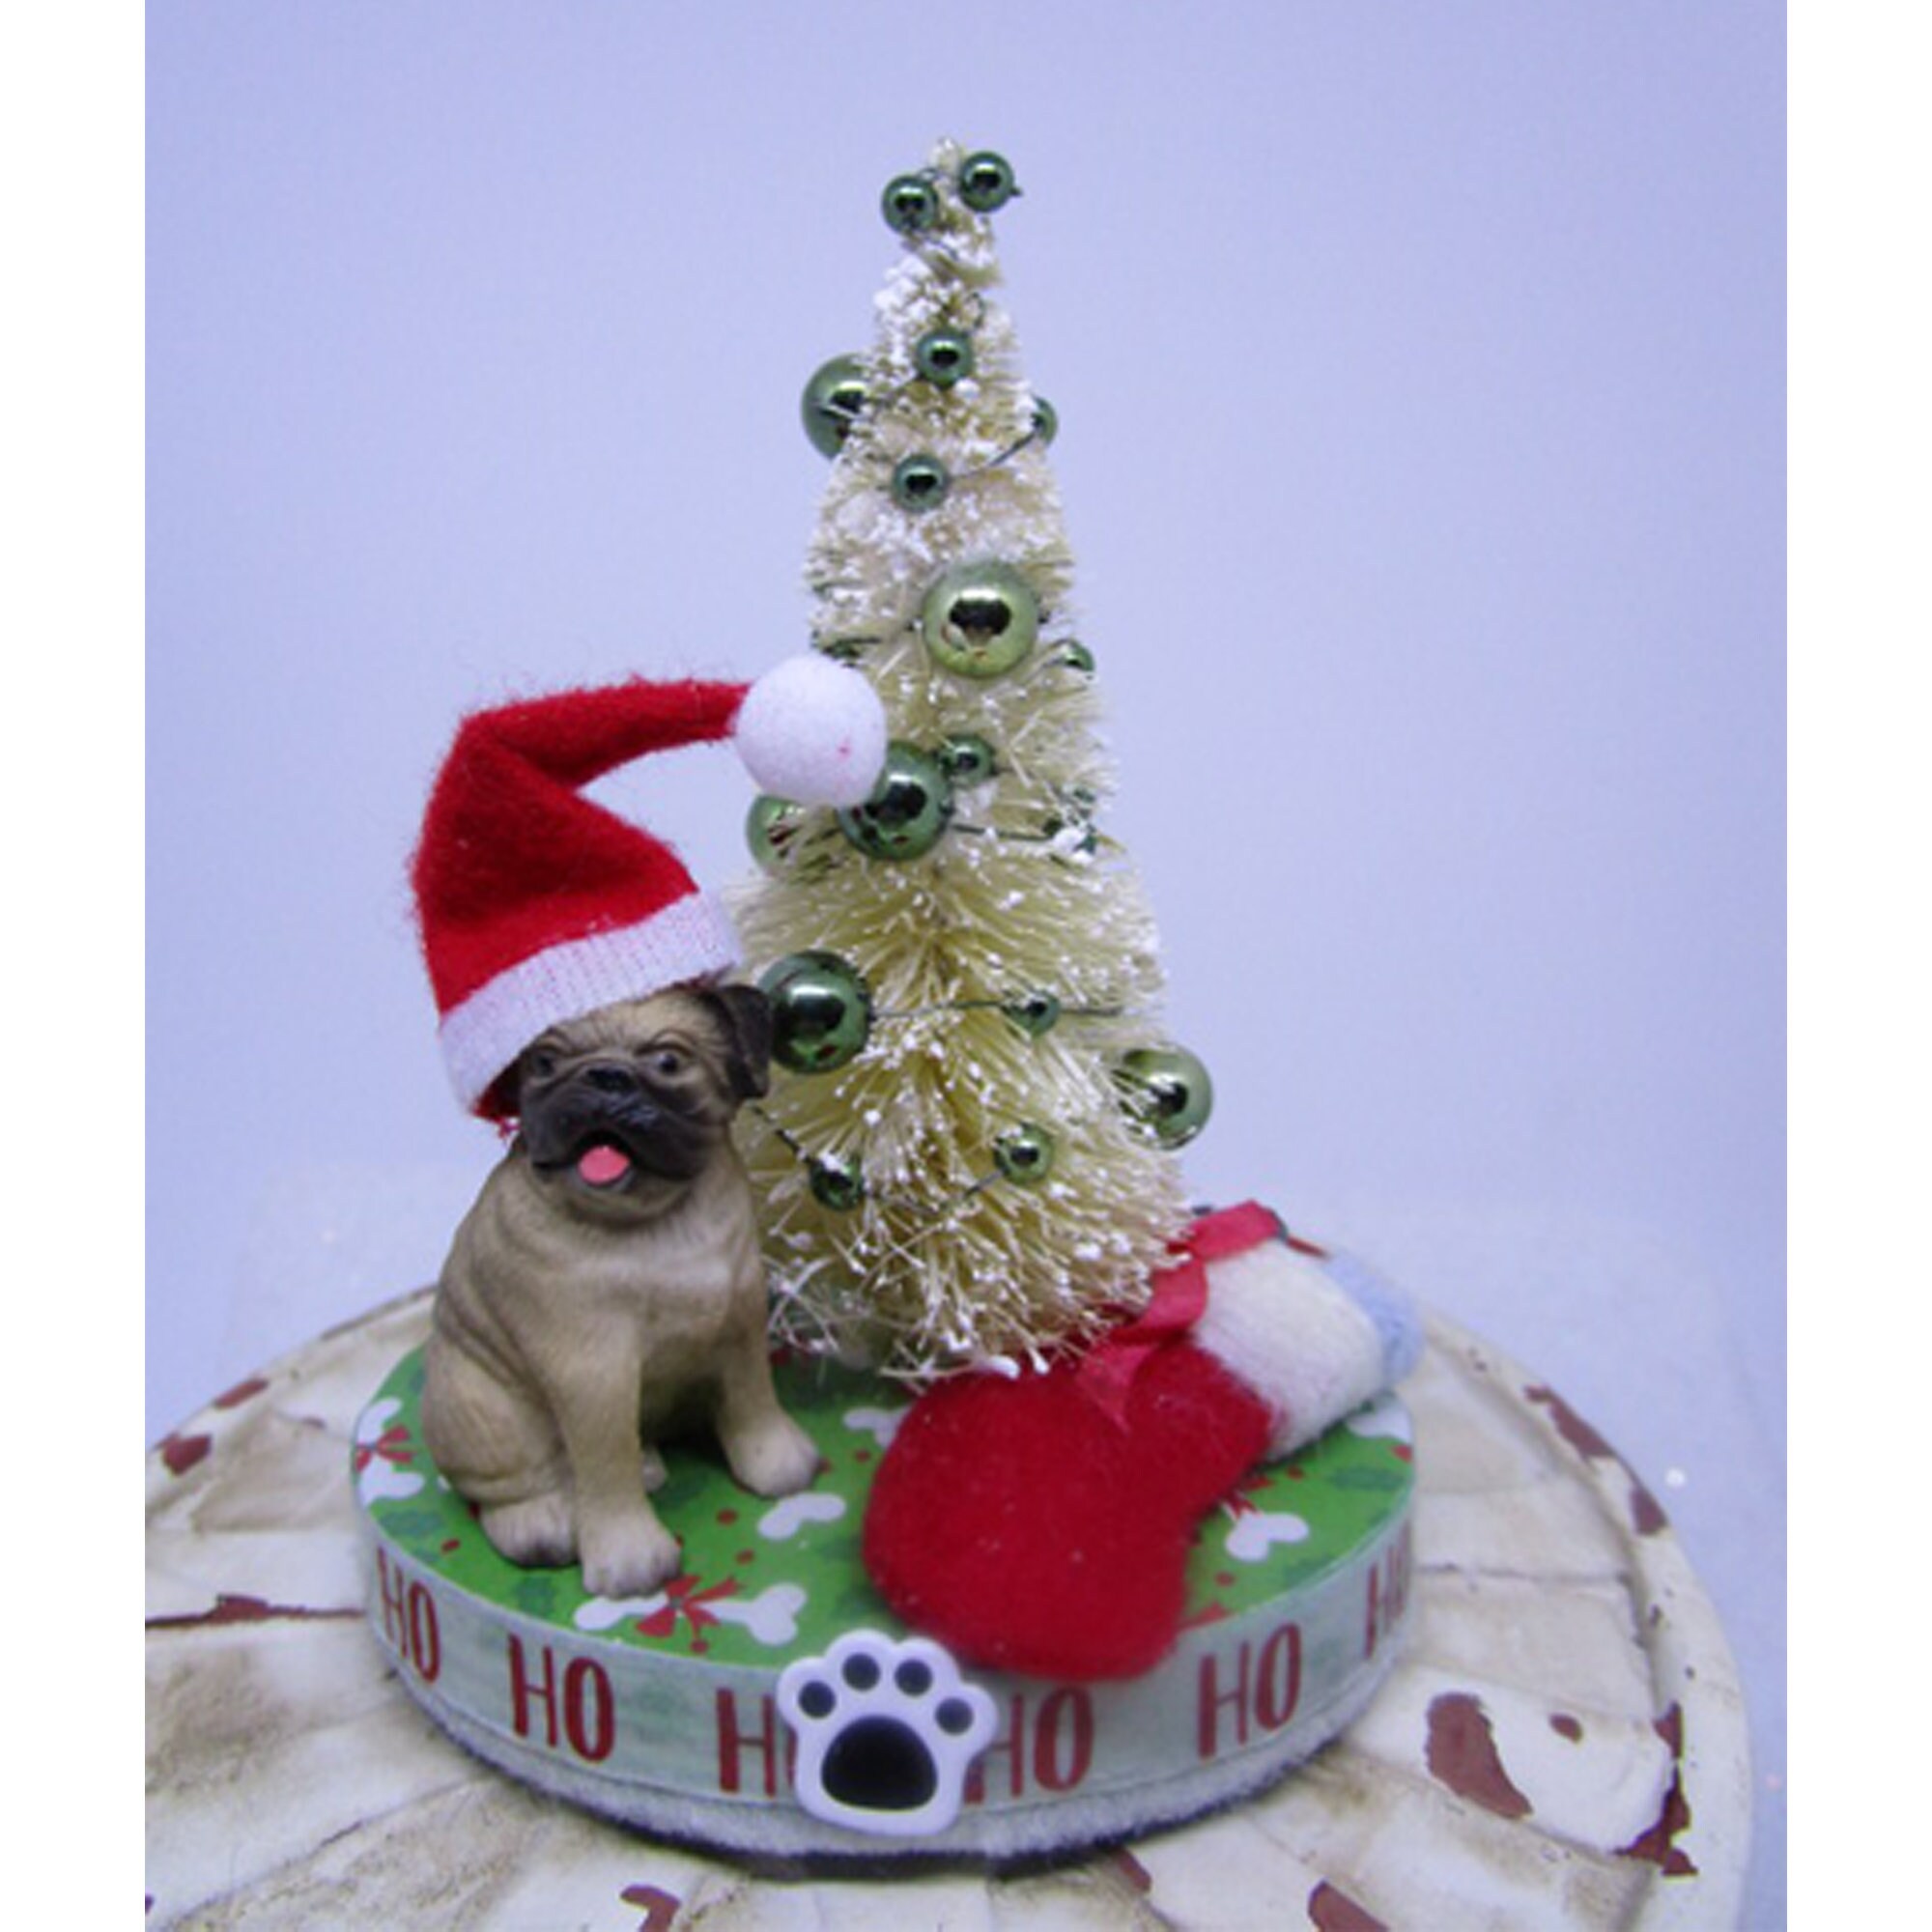 Pug Christmas Ornament